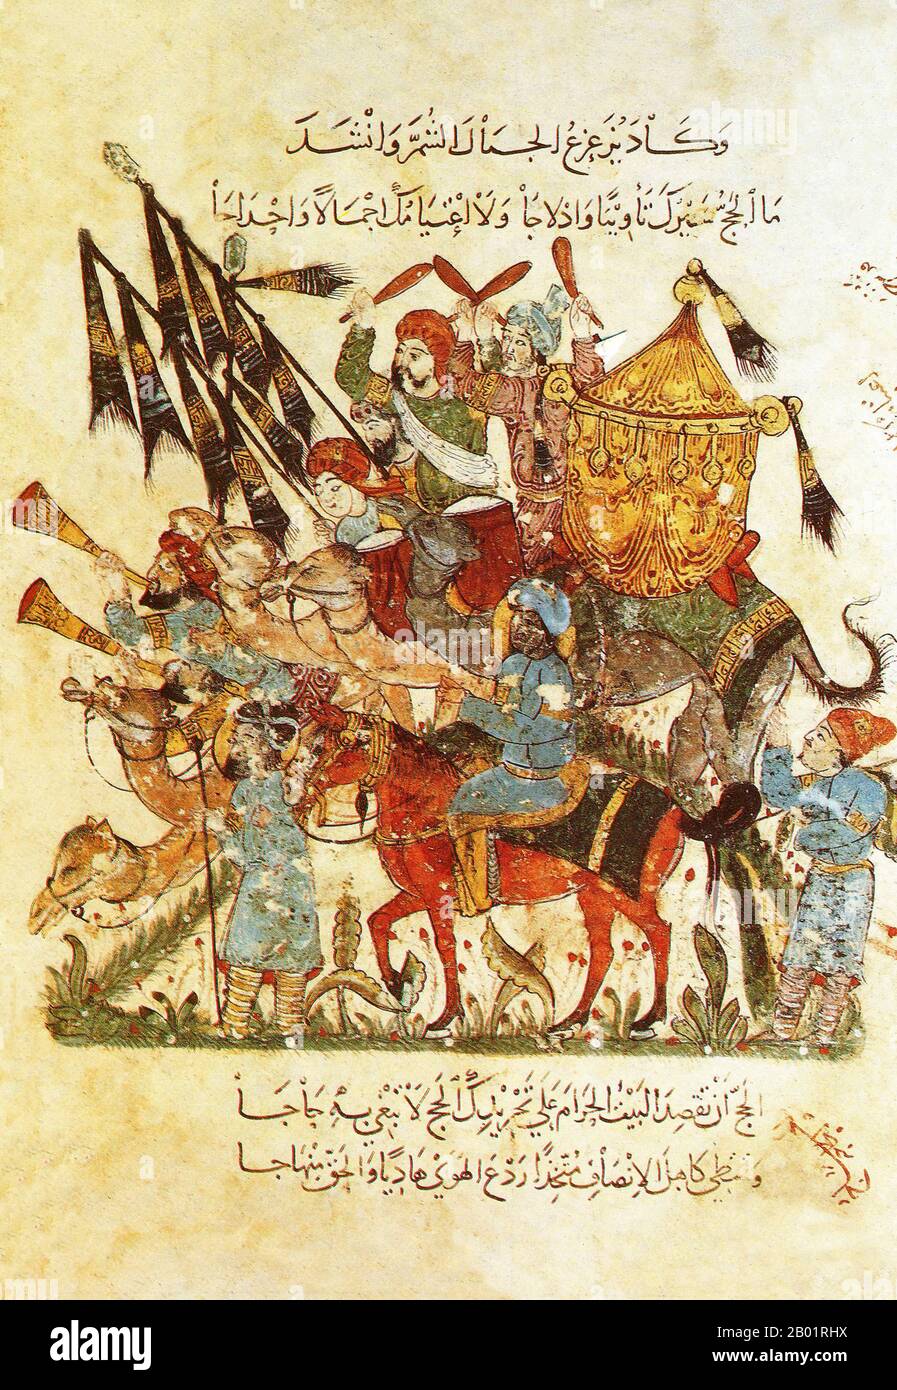 Iraq: Una carovana pellegrina haj in viaggio verso la città Santa della Mecca. Pittura in miniatura di Yahya ibn Mahmud al-Wasiti, 1237 d.C. Yahyâ ibn Mahmûd al-Wâsitî è stato un artista arabo islamico del XIII secolo. Al-Wasiti è nato a Wasit, nel sud dell'Iraq. Era noto per le sue illustrazioni del Maqam di al-Hariri. I Maqāma (letteralmente "assemblee") sono un genere letterario arabo (originariamente) di prosa rimata con intervalli di poesia in cui la stravaganza retorica è evidente. Si dice che l'autore del X secolo Badī' al-Zaman al-Hamadhāni abbia inventato la forma, che fu estesa da al-Hariri di Bassora. Foto Stock